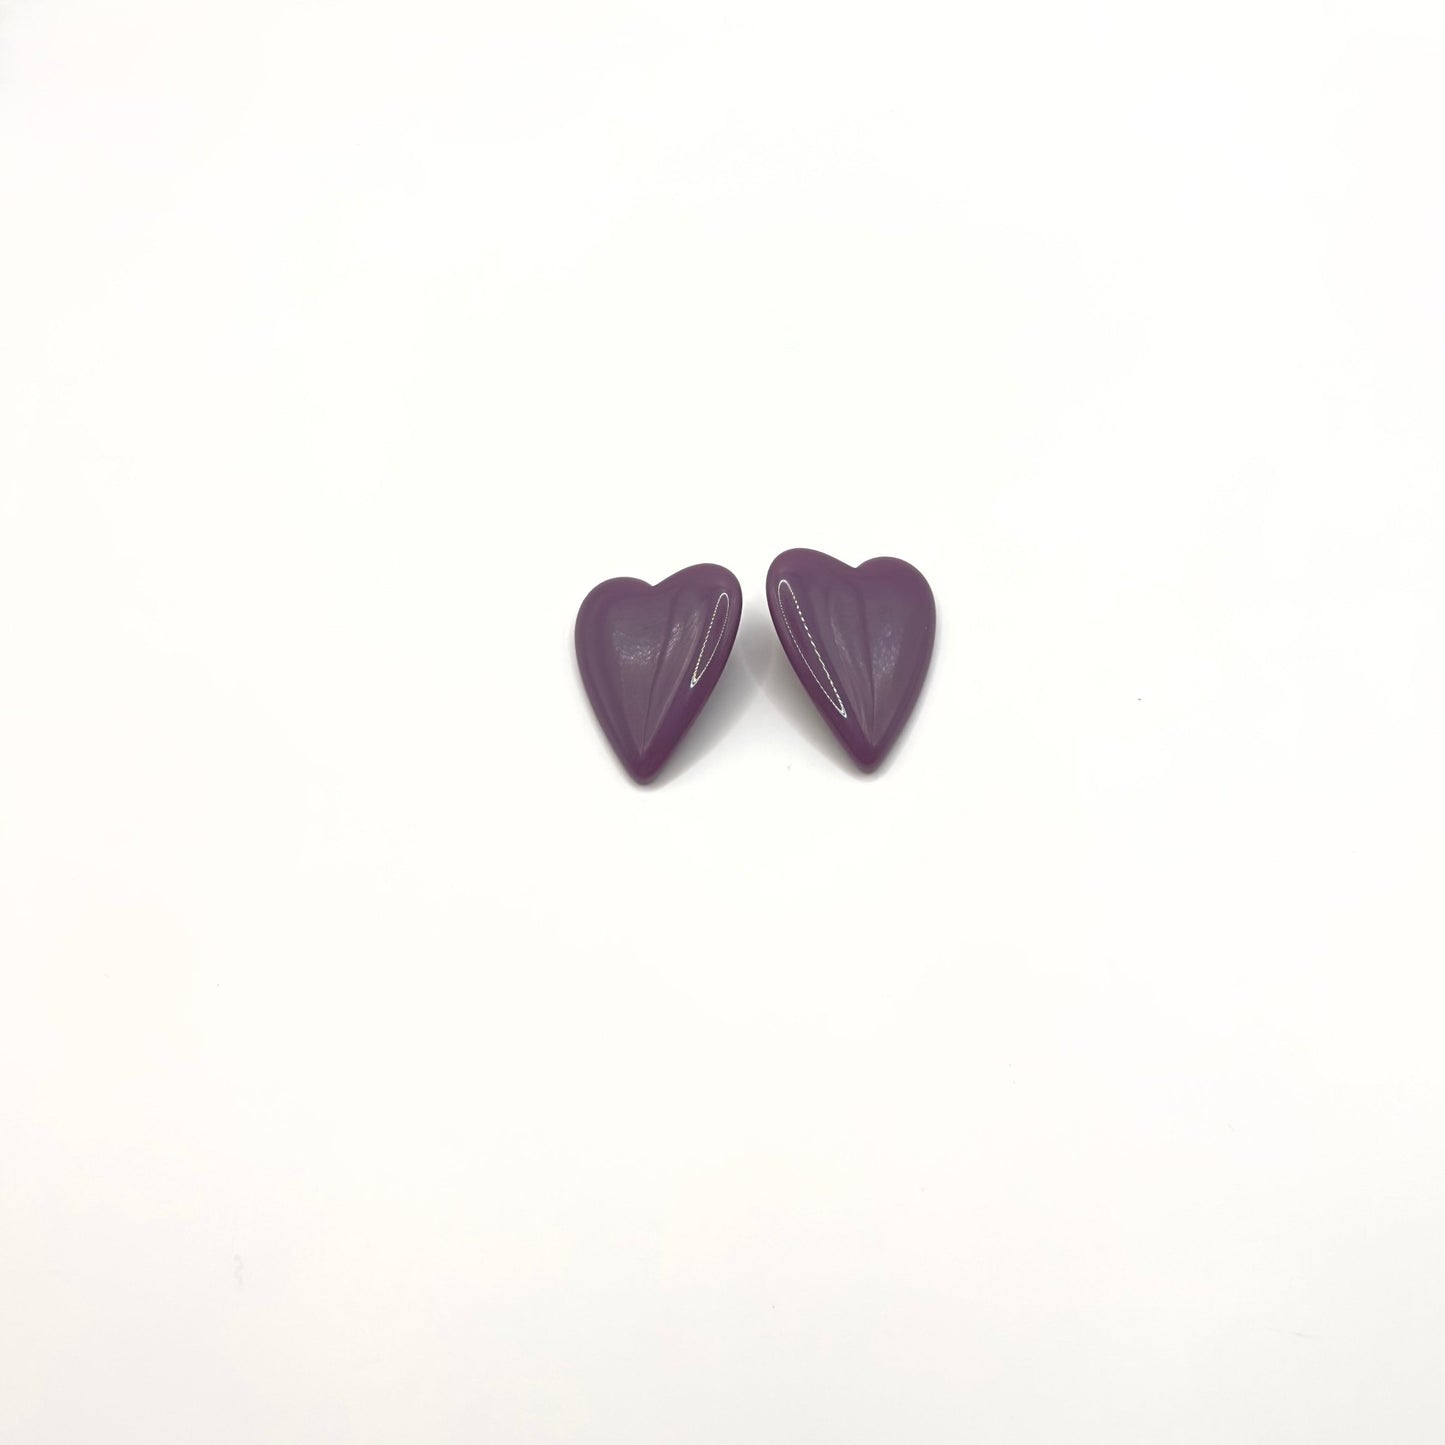 Brinco Corazion Purple - Fridali Shop